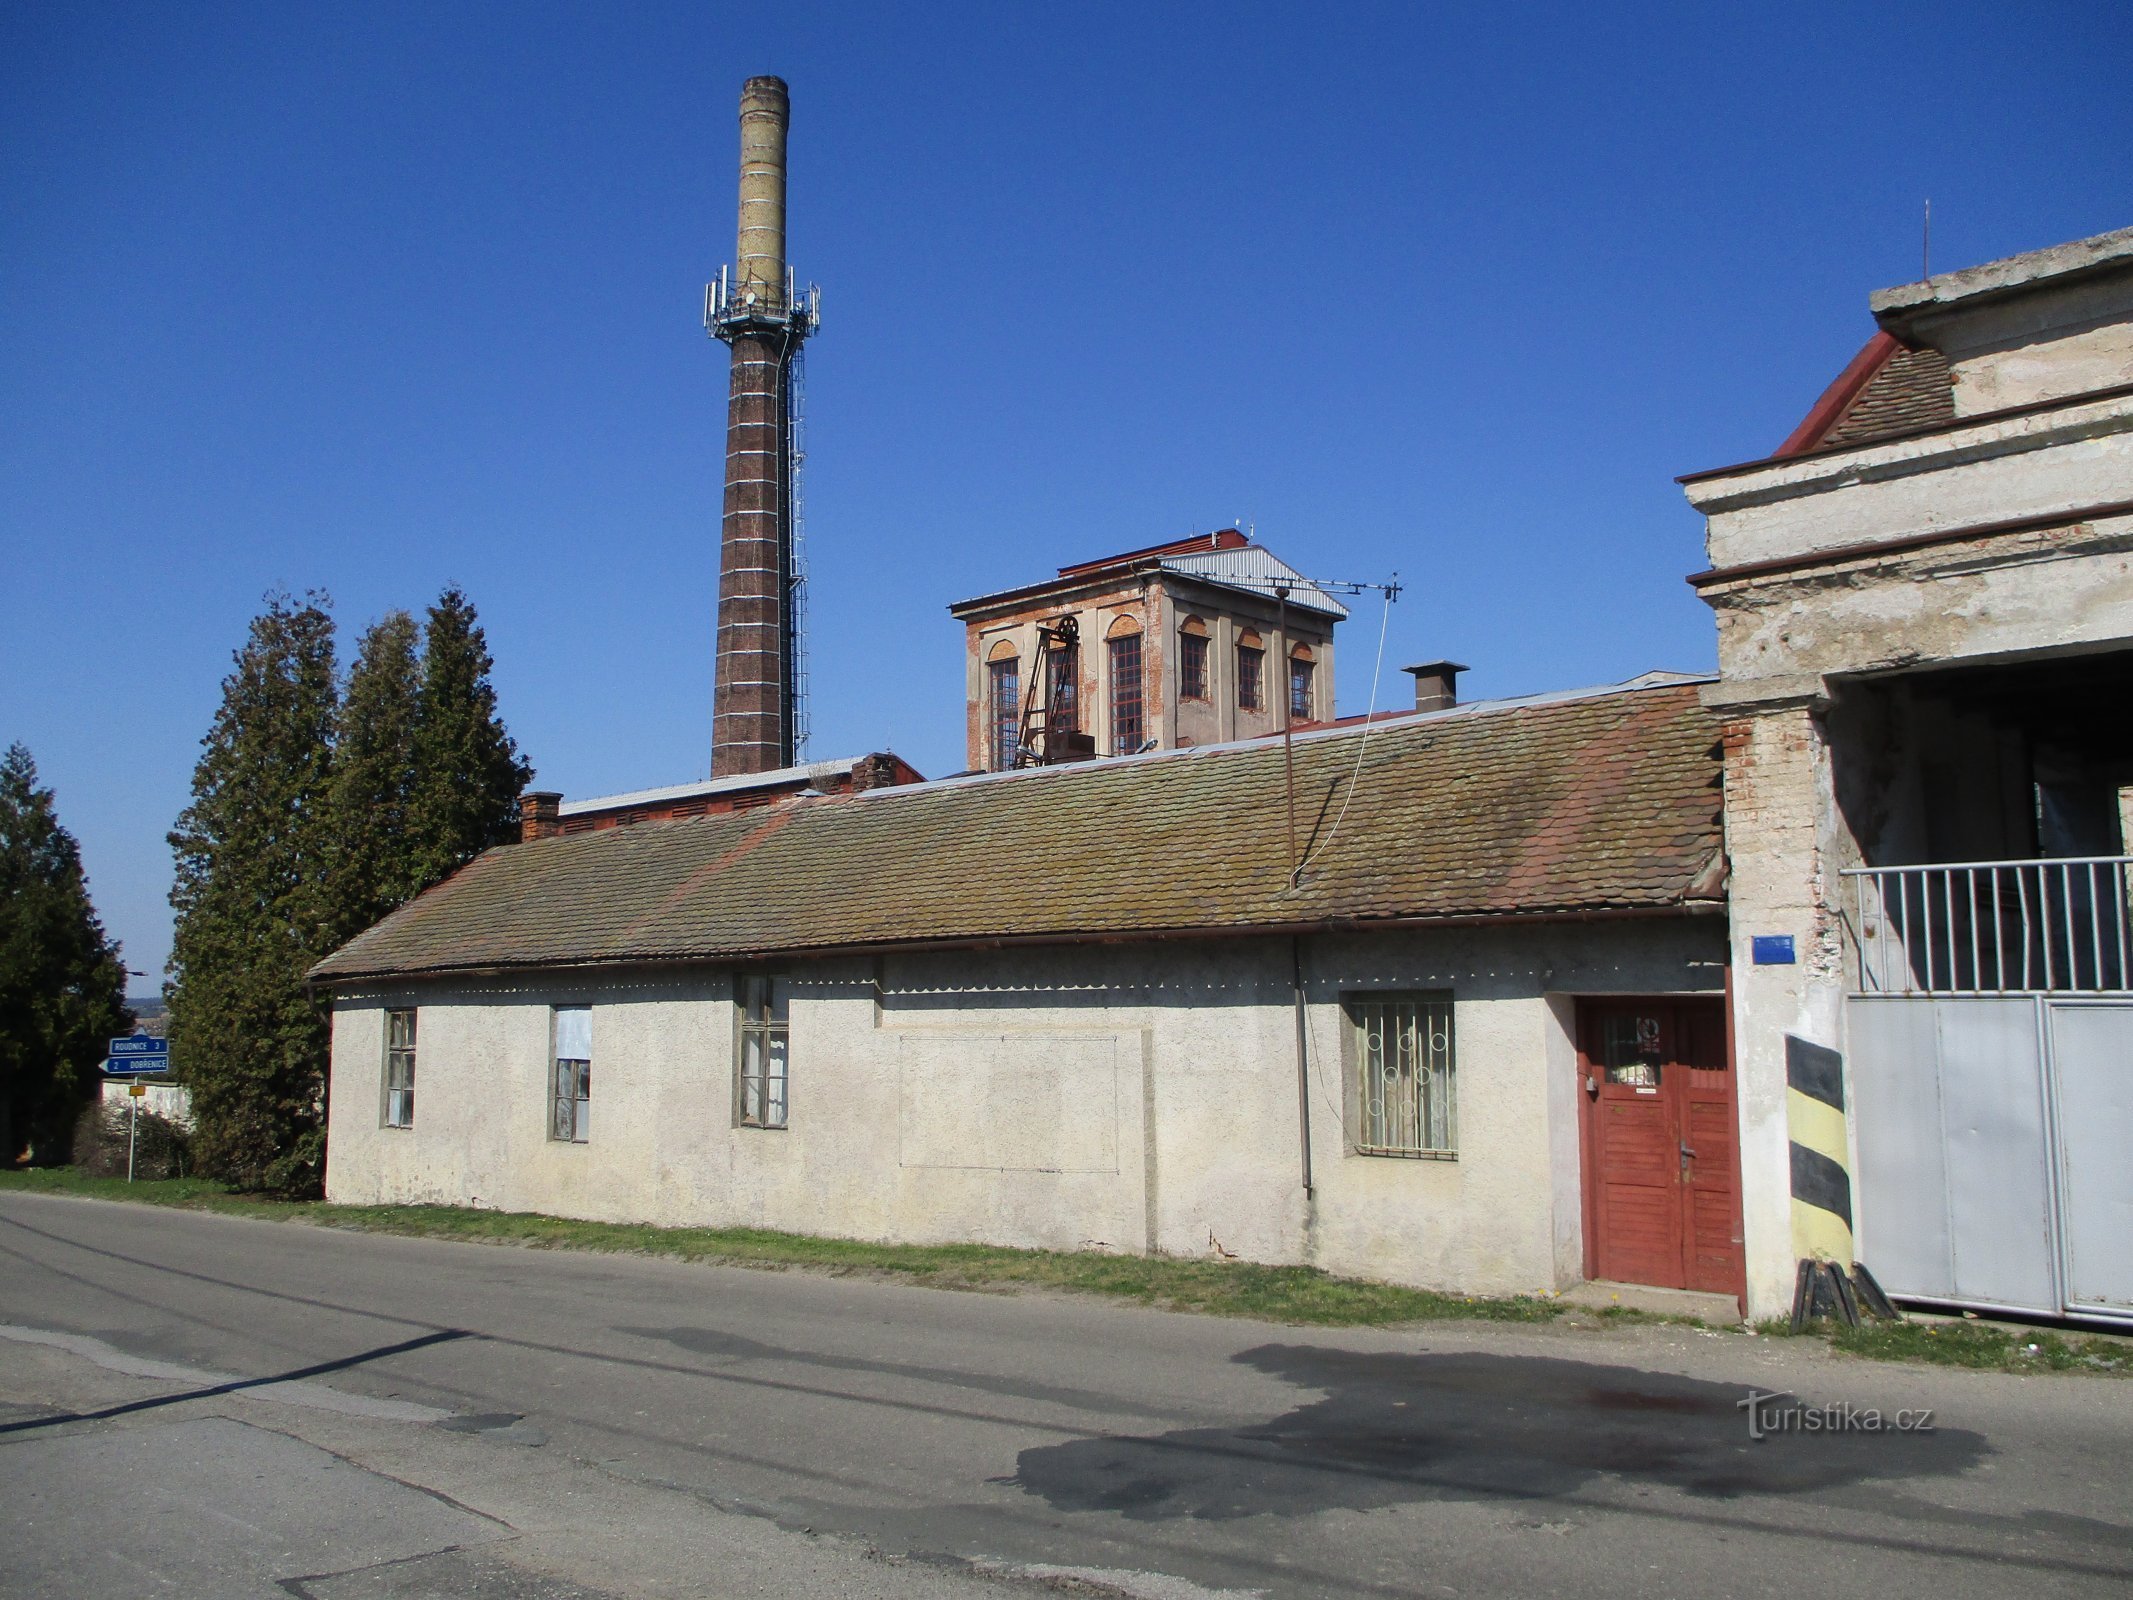 元砂糖工場 (Syrovátka、7.4.2020 年 XNUMX 月 XNUMX 日)